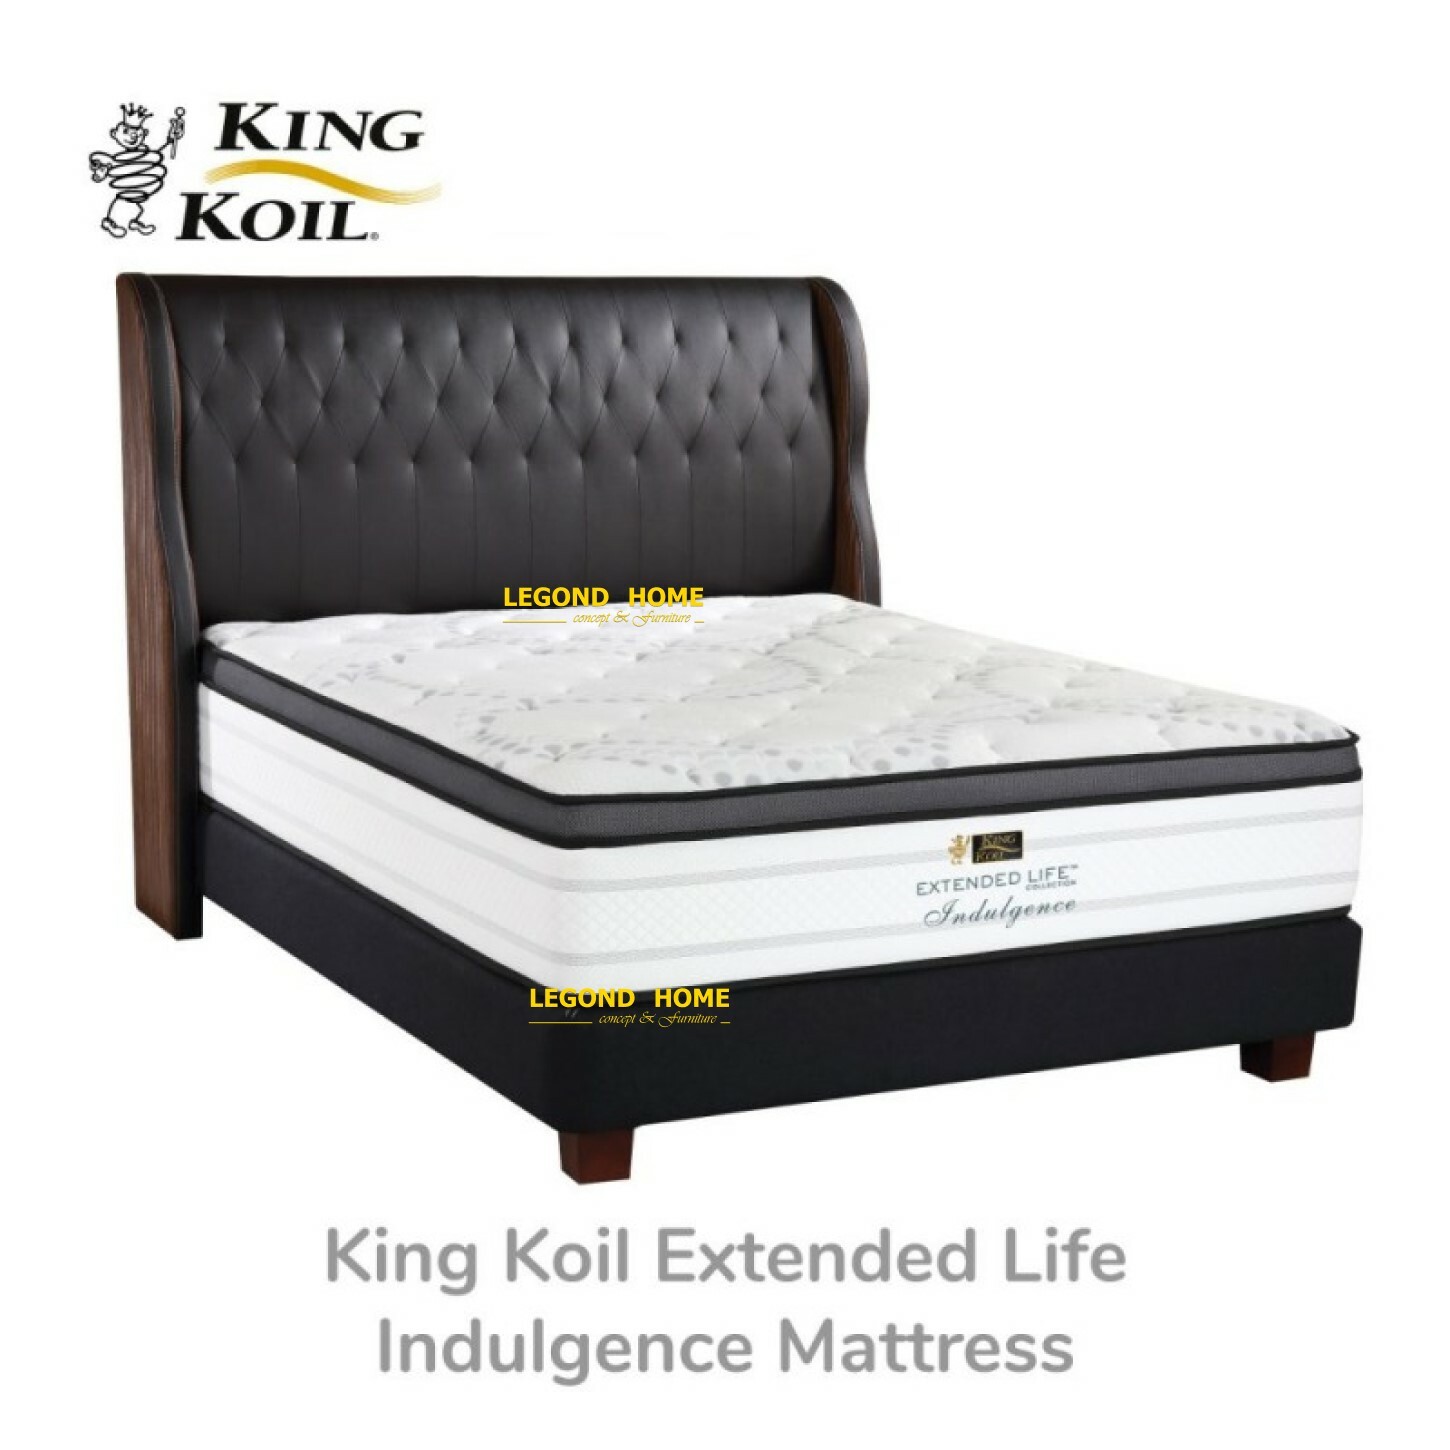 King-Koil-Extended-Life-Indulgence-Mattress.jpg